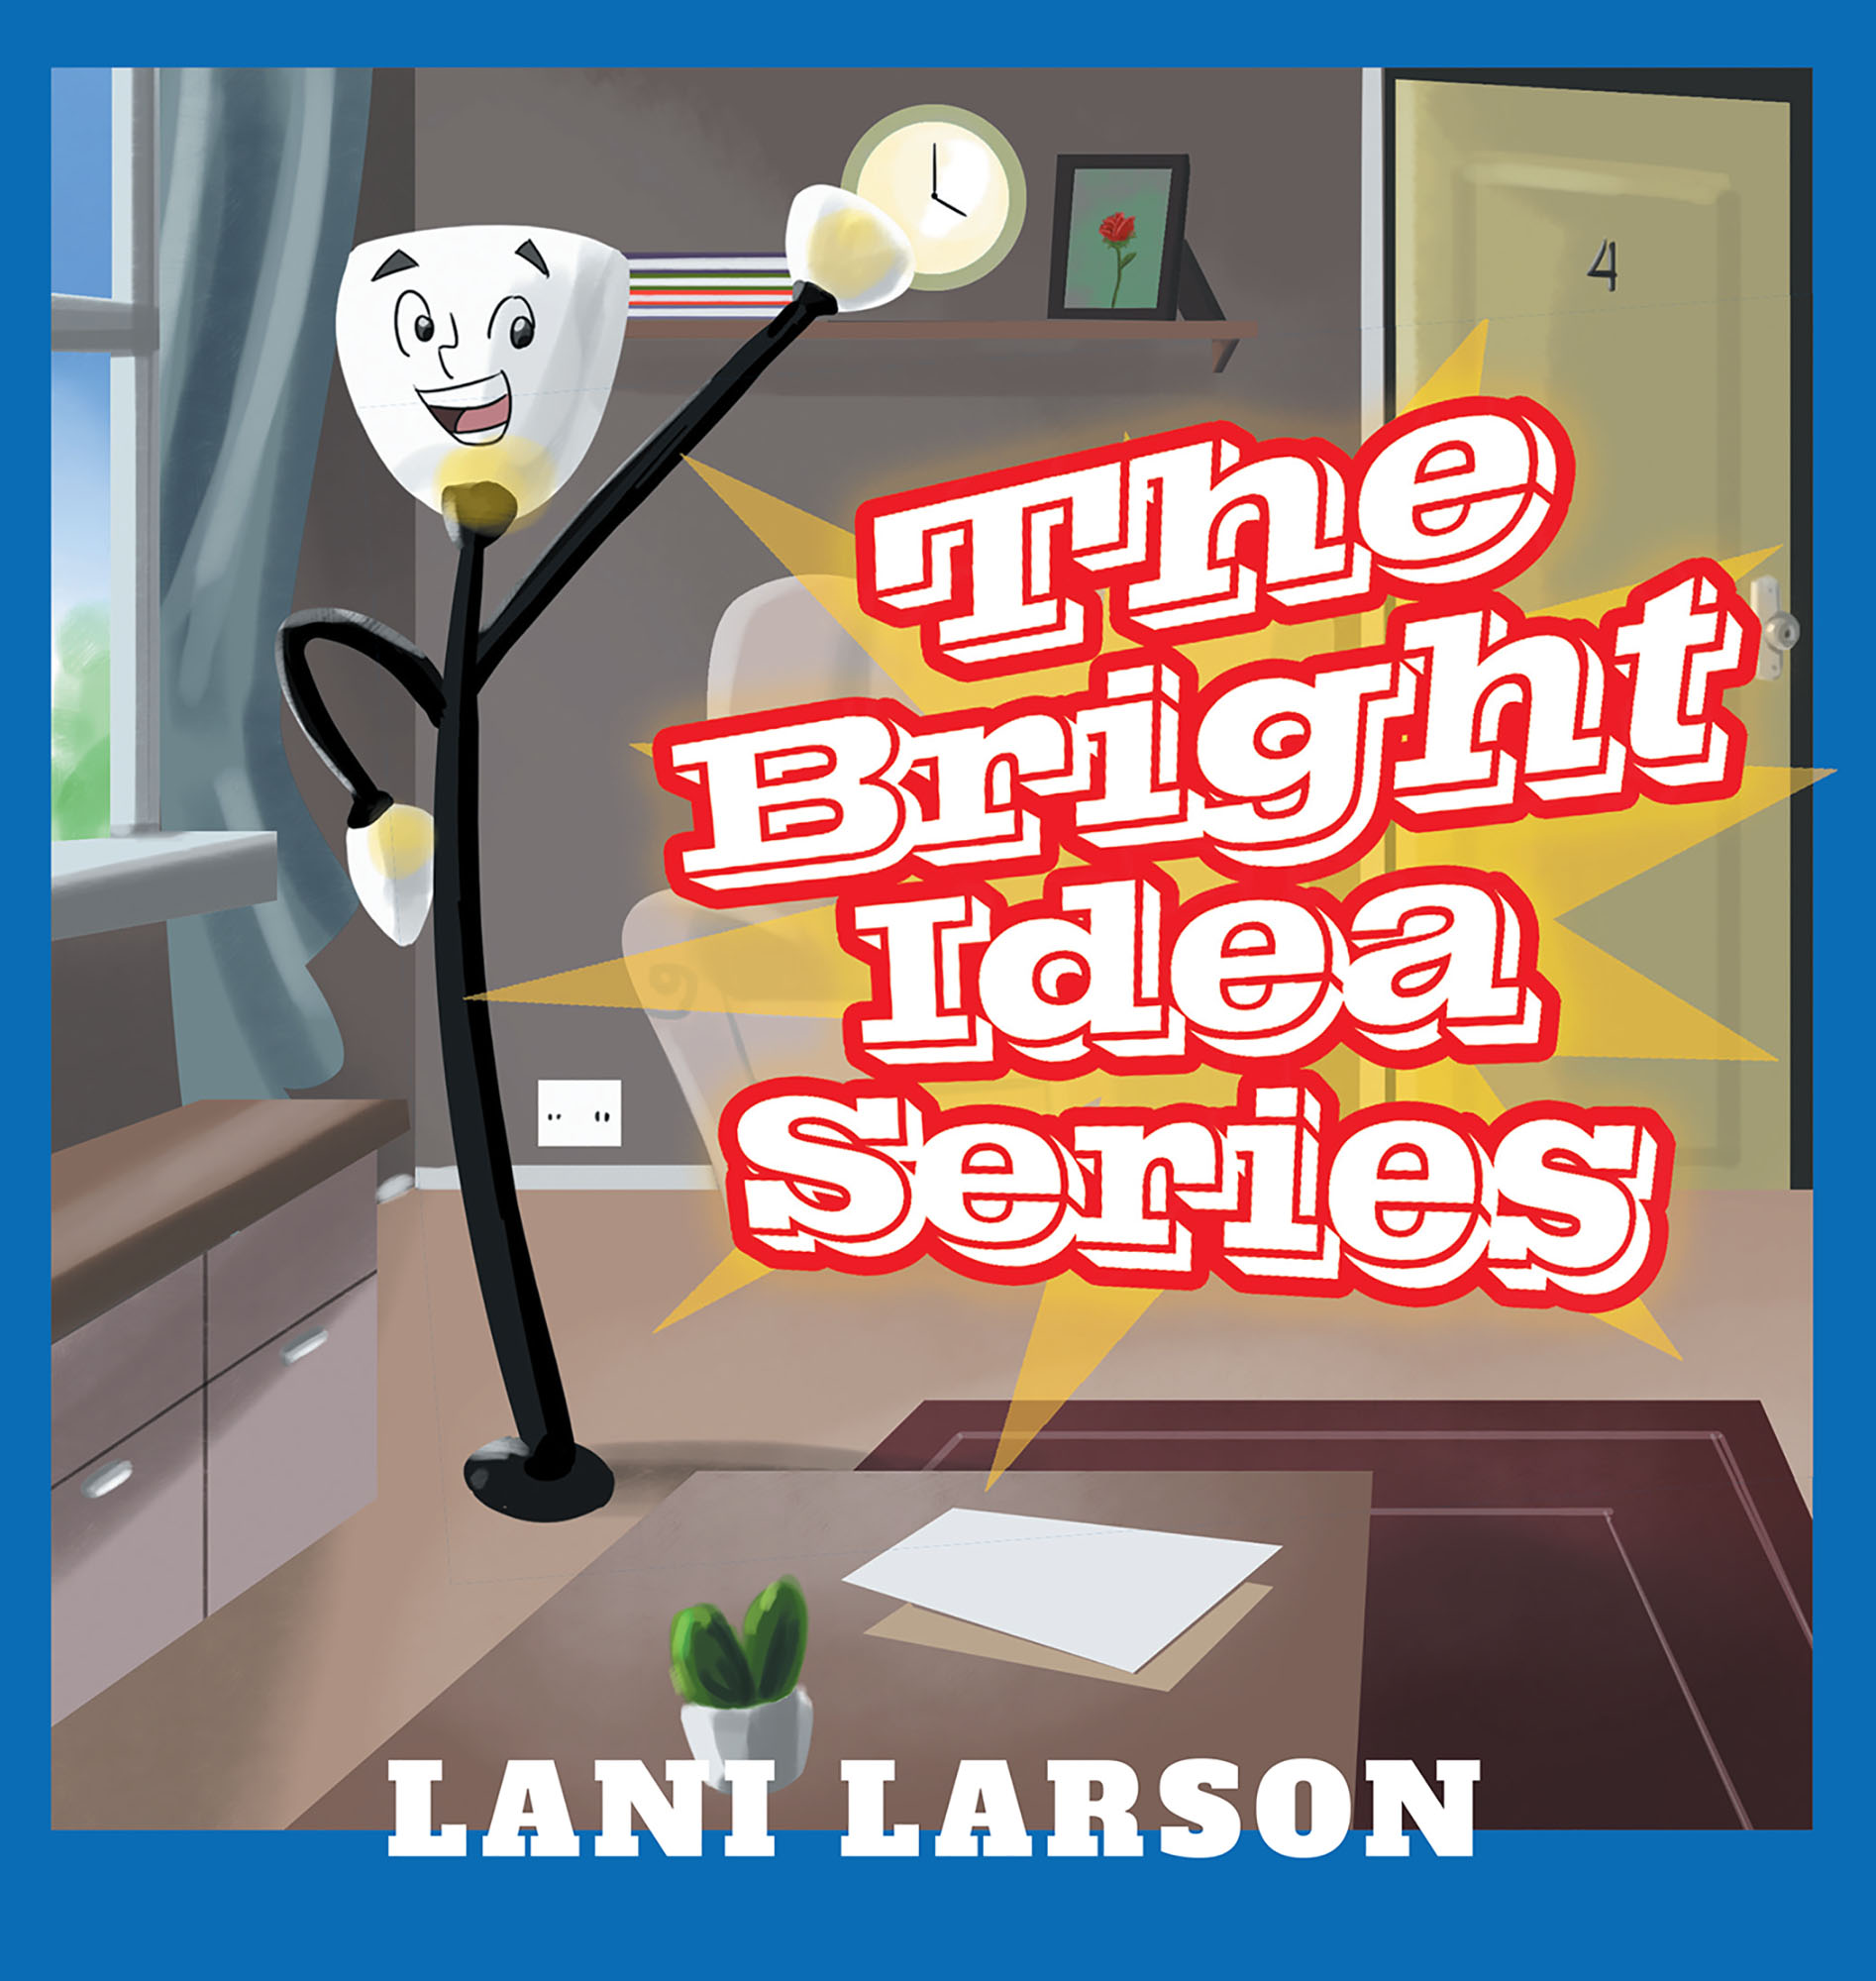 The Bright Idea Series Cover Image